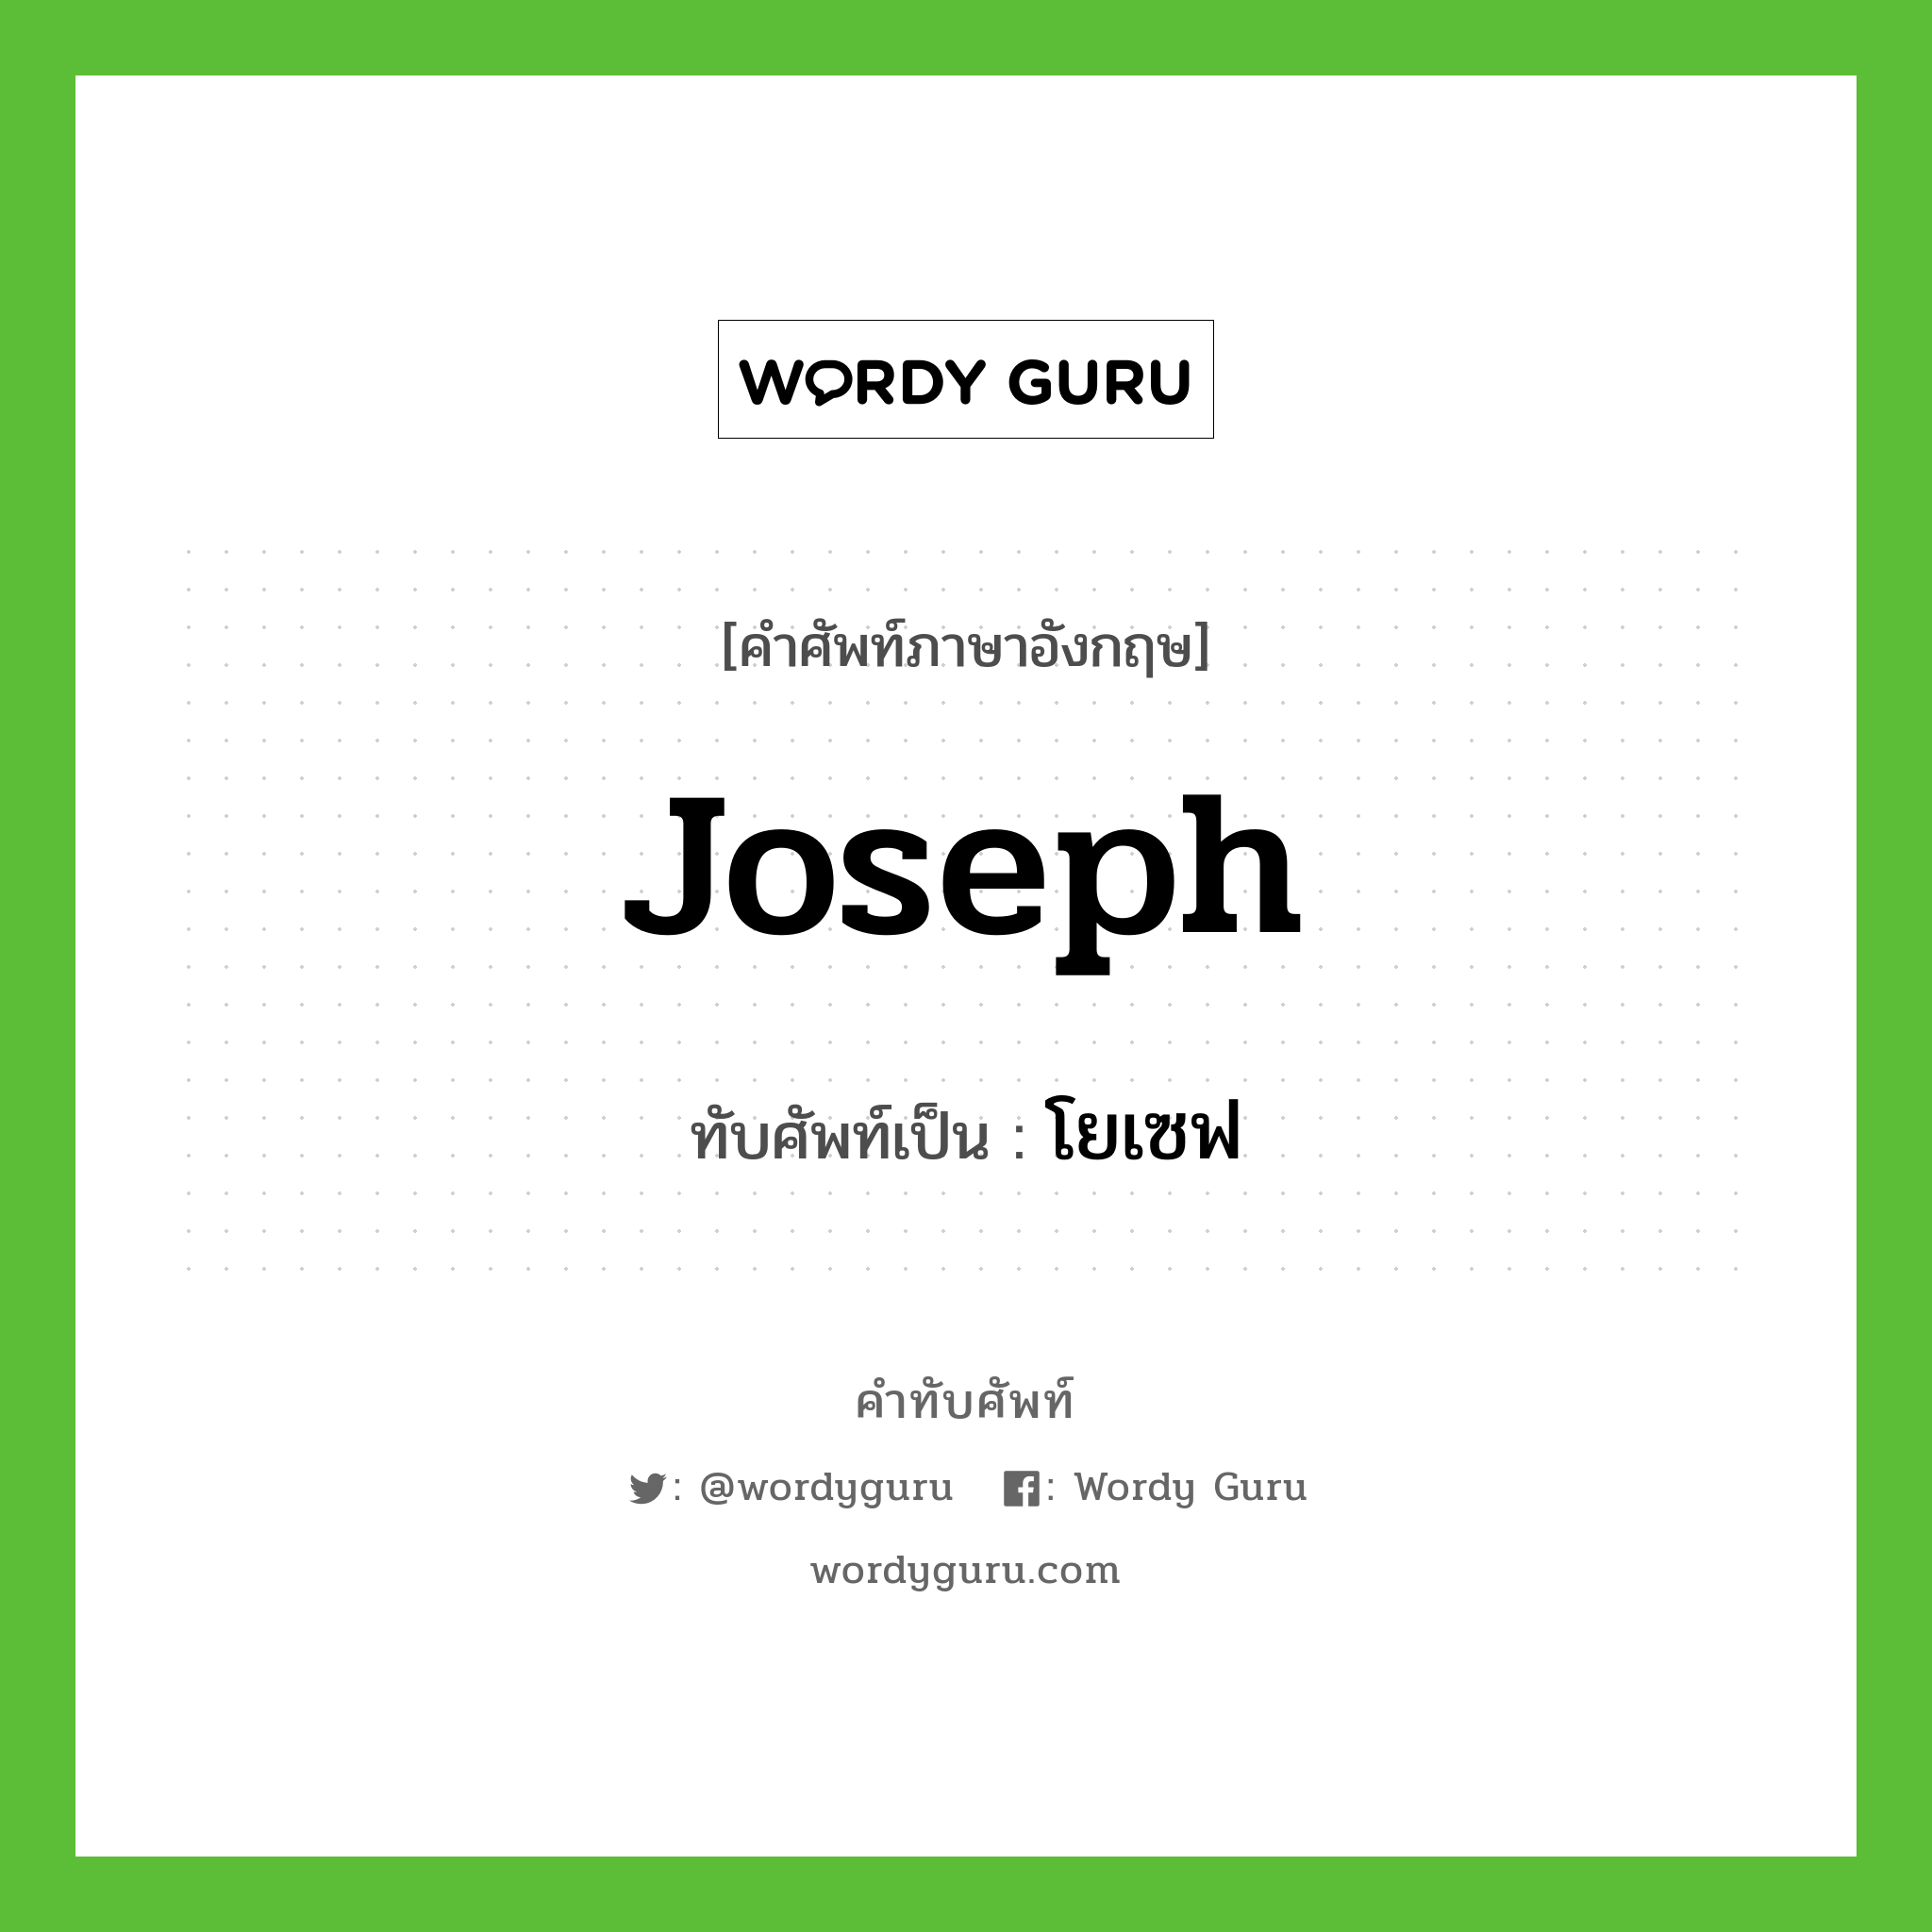 Joseph เขียนเป็นคำไทยว่าอะไร?, คำศัพท์ภาษาอังกฤษ Joseph ทับศัพท์เป็น โยเซฟ